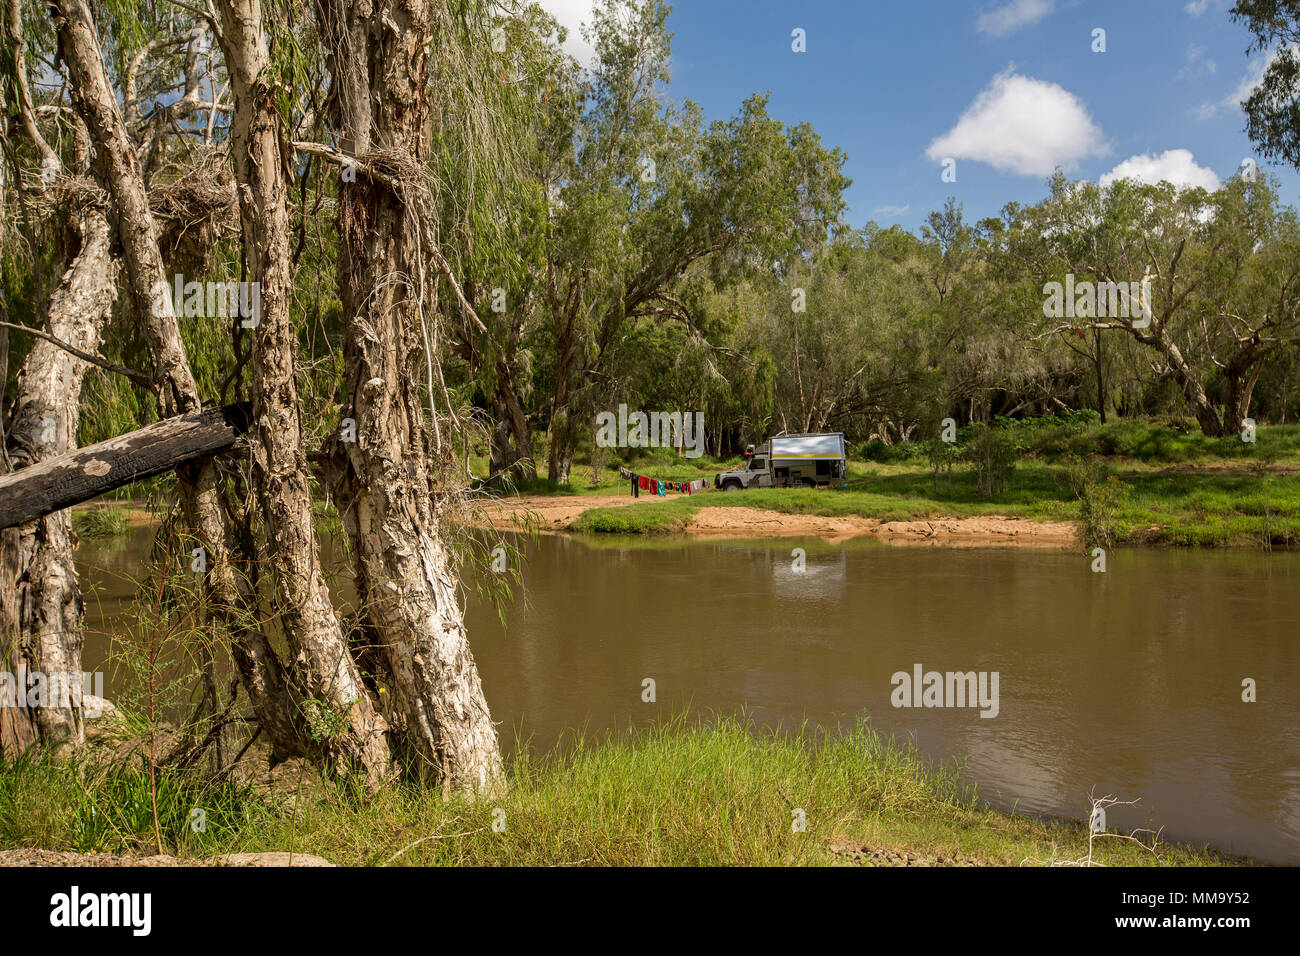 Veicolo per attività ricreative. Land Rover camper e al campeggio in uno splendido paesaggio boscoso sulla banca del fiume di Isacco sotto il cielo blu nel Queensland Australia Foto Stock